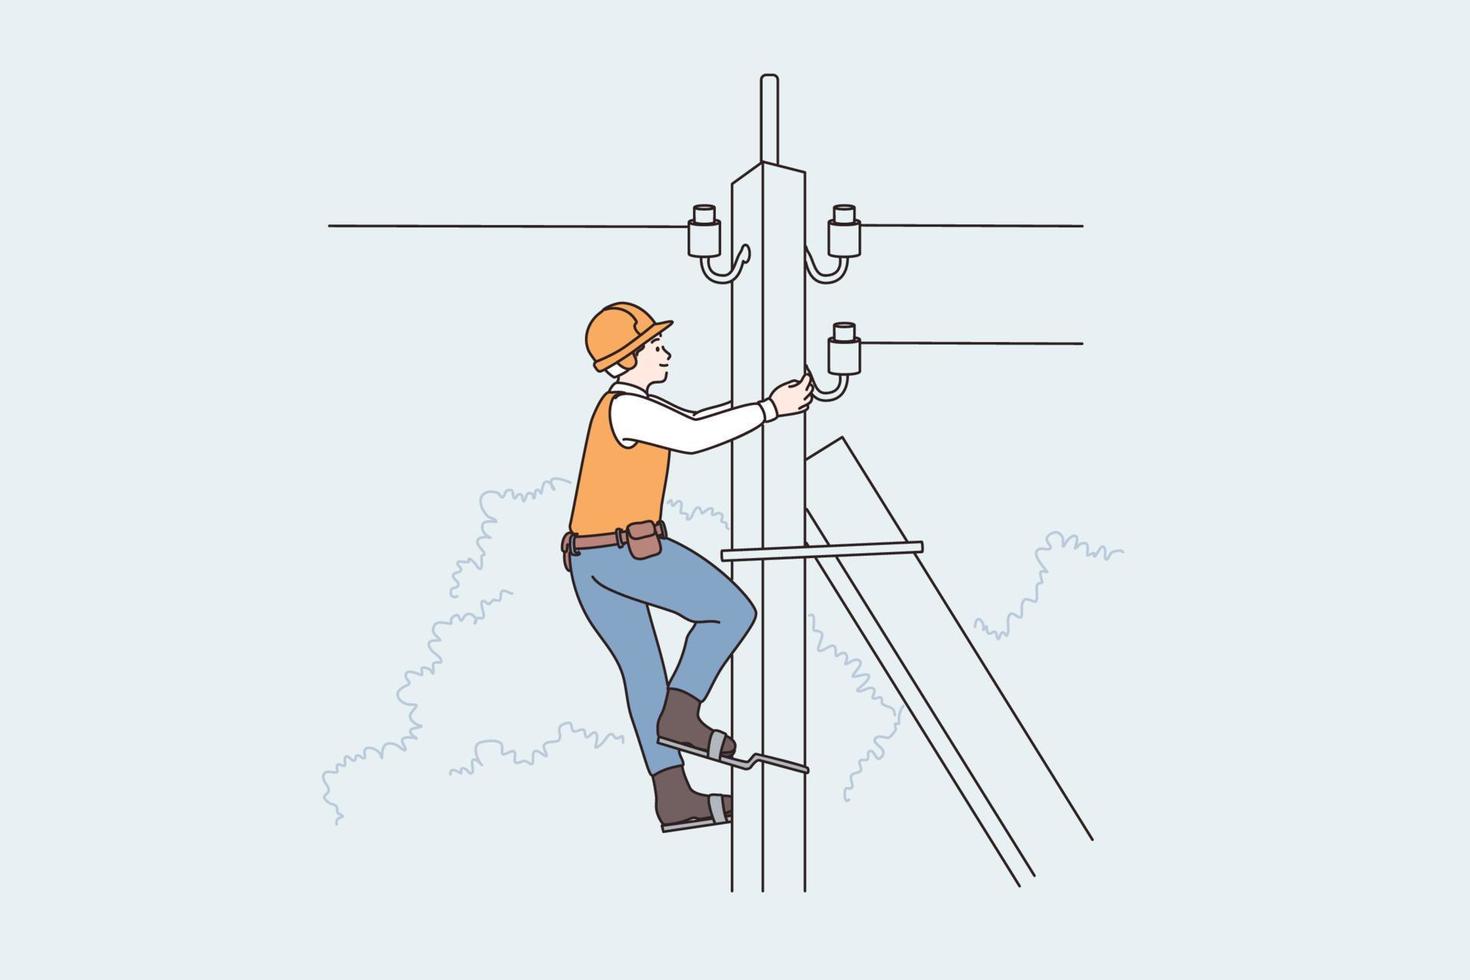 equipo de rayos y concepto de trabajadores. hombre liniero trabajador subiendo poste telefónico, ilustración vectorial de alto voltaje vector